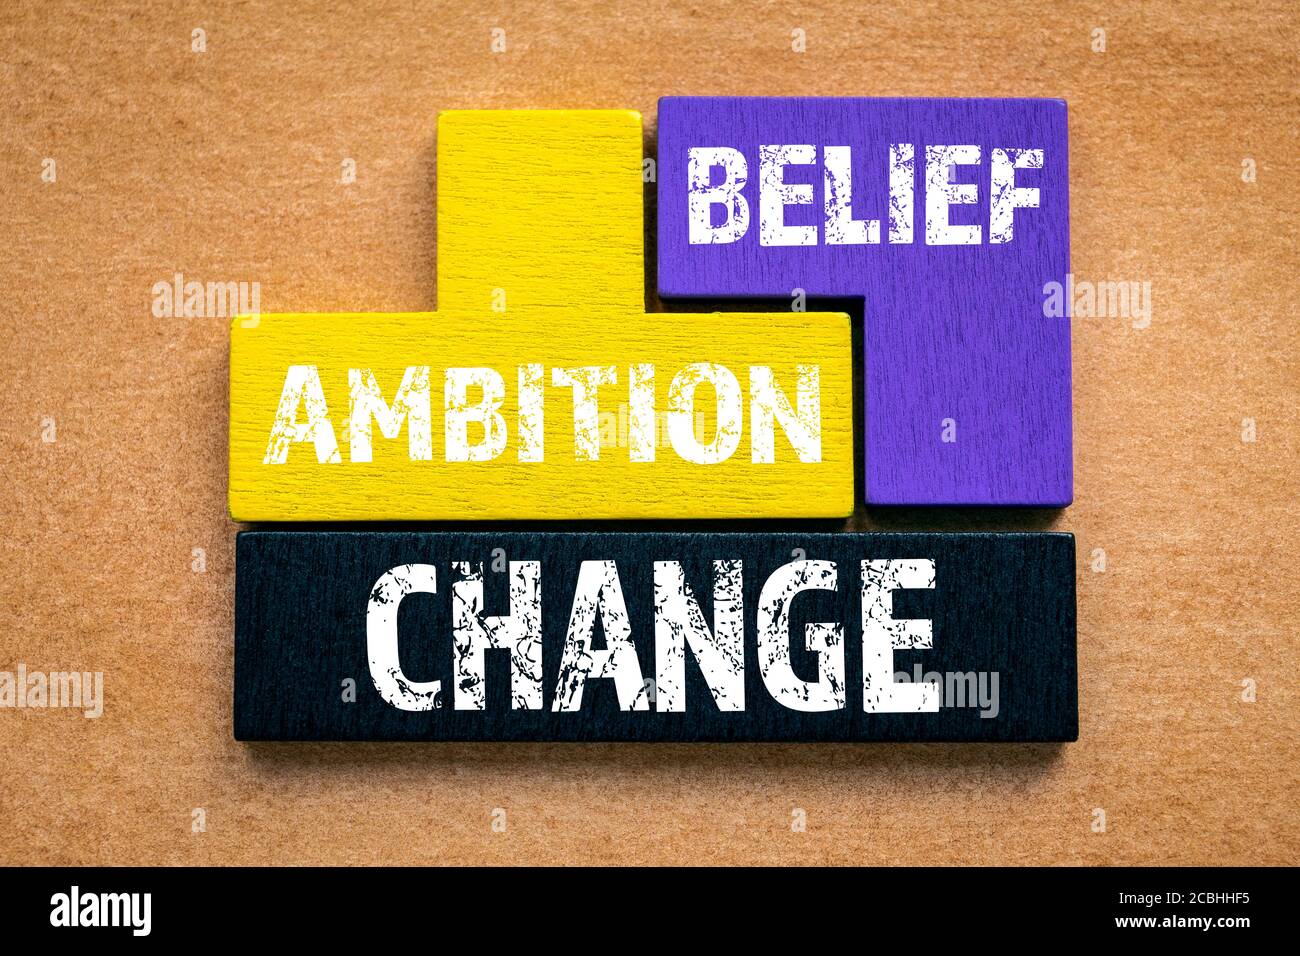 Ambition: Sự tham vọng là một yếu tố không thể thiếu để đạt được thành công trong cuộc sống. Bức ảnh này sẽ giúp bạn hình dung và cảm nhận được bản thân mình đang tiến đến mục tiêu của mình một cách từng bước.